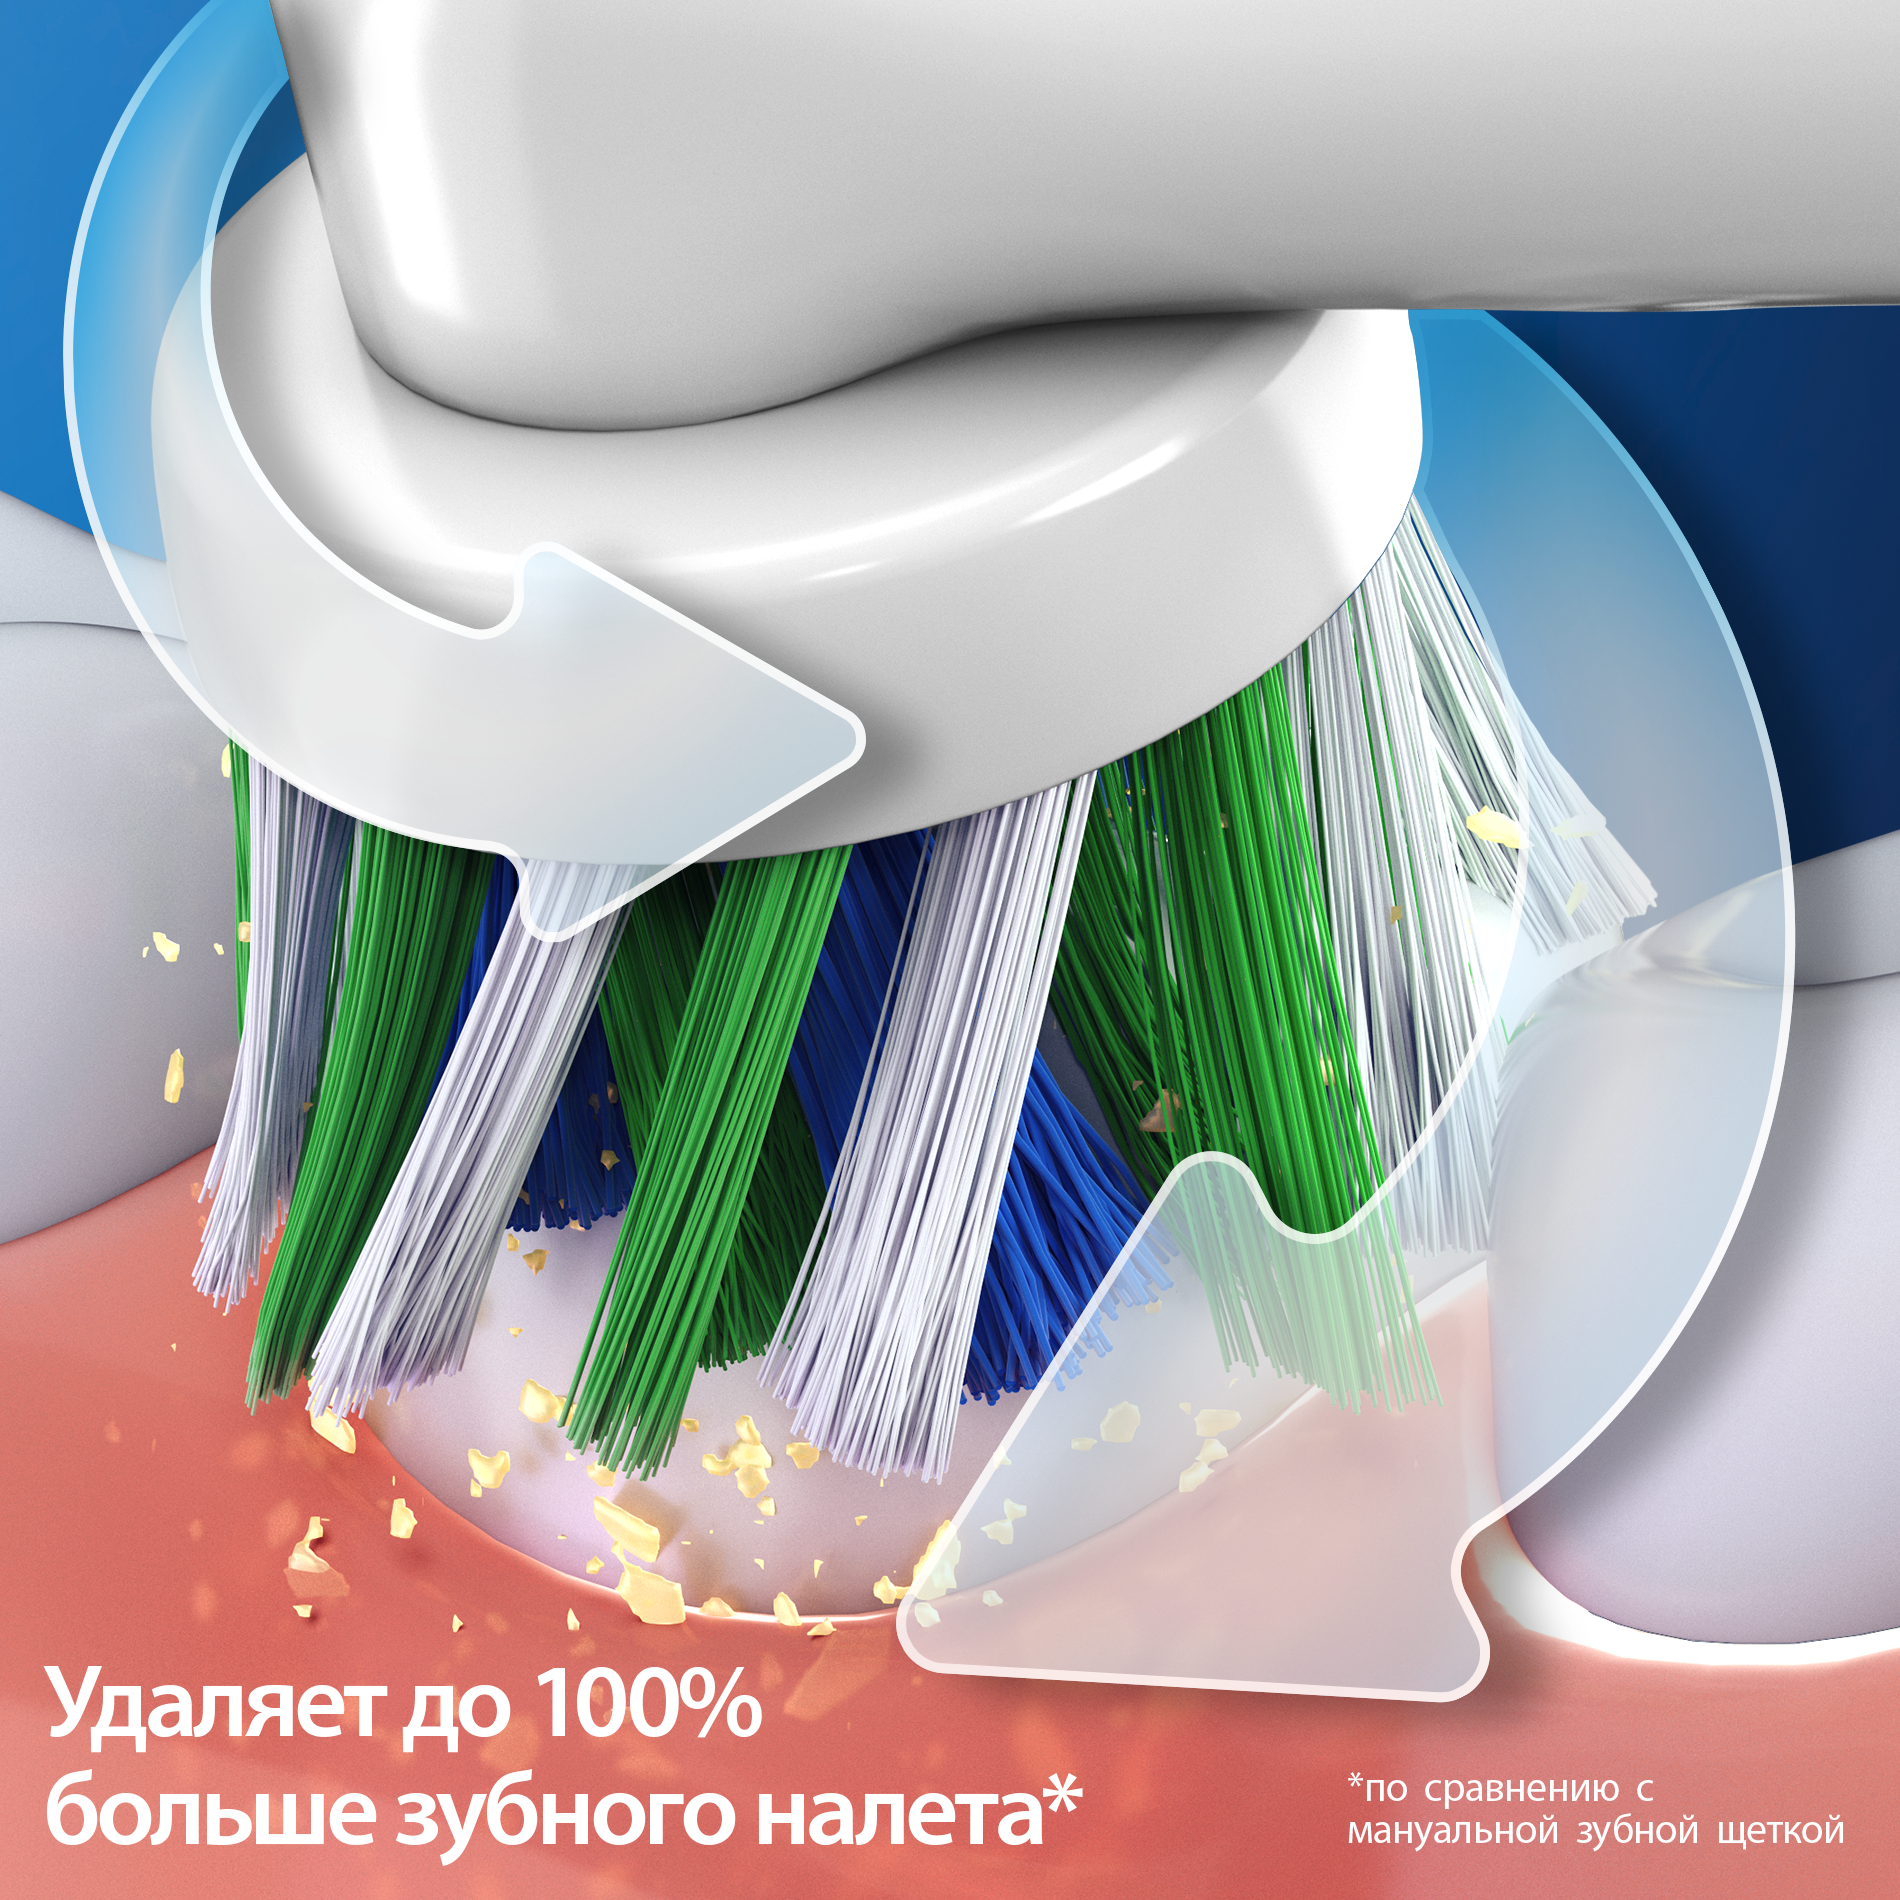 Электрическая зубная щётка Oral-B Vitality Pro для бережной чистки, Чёрная, 1 шт, Оригинальная